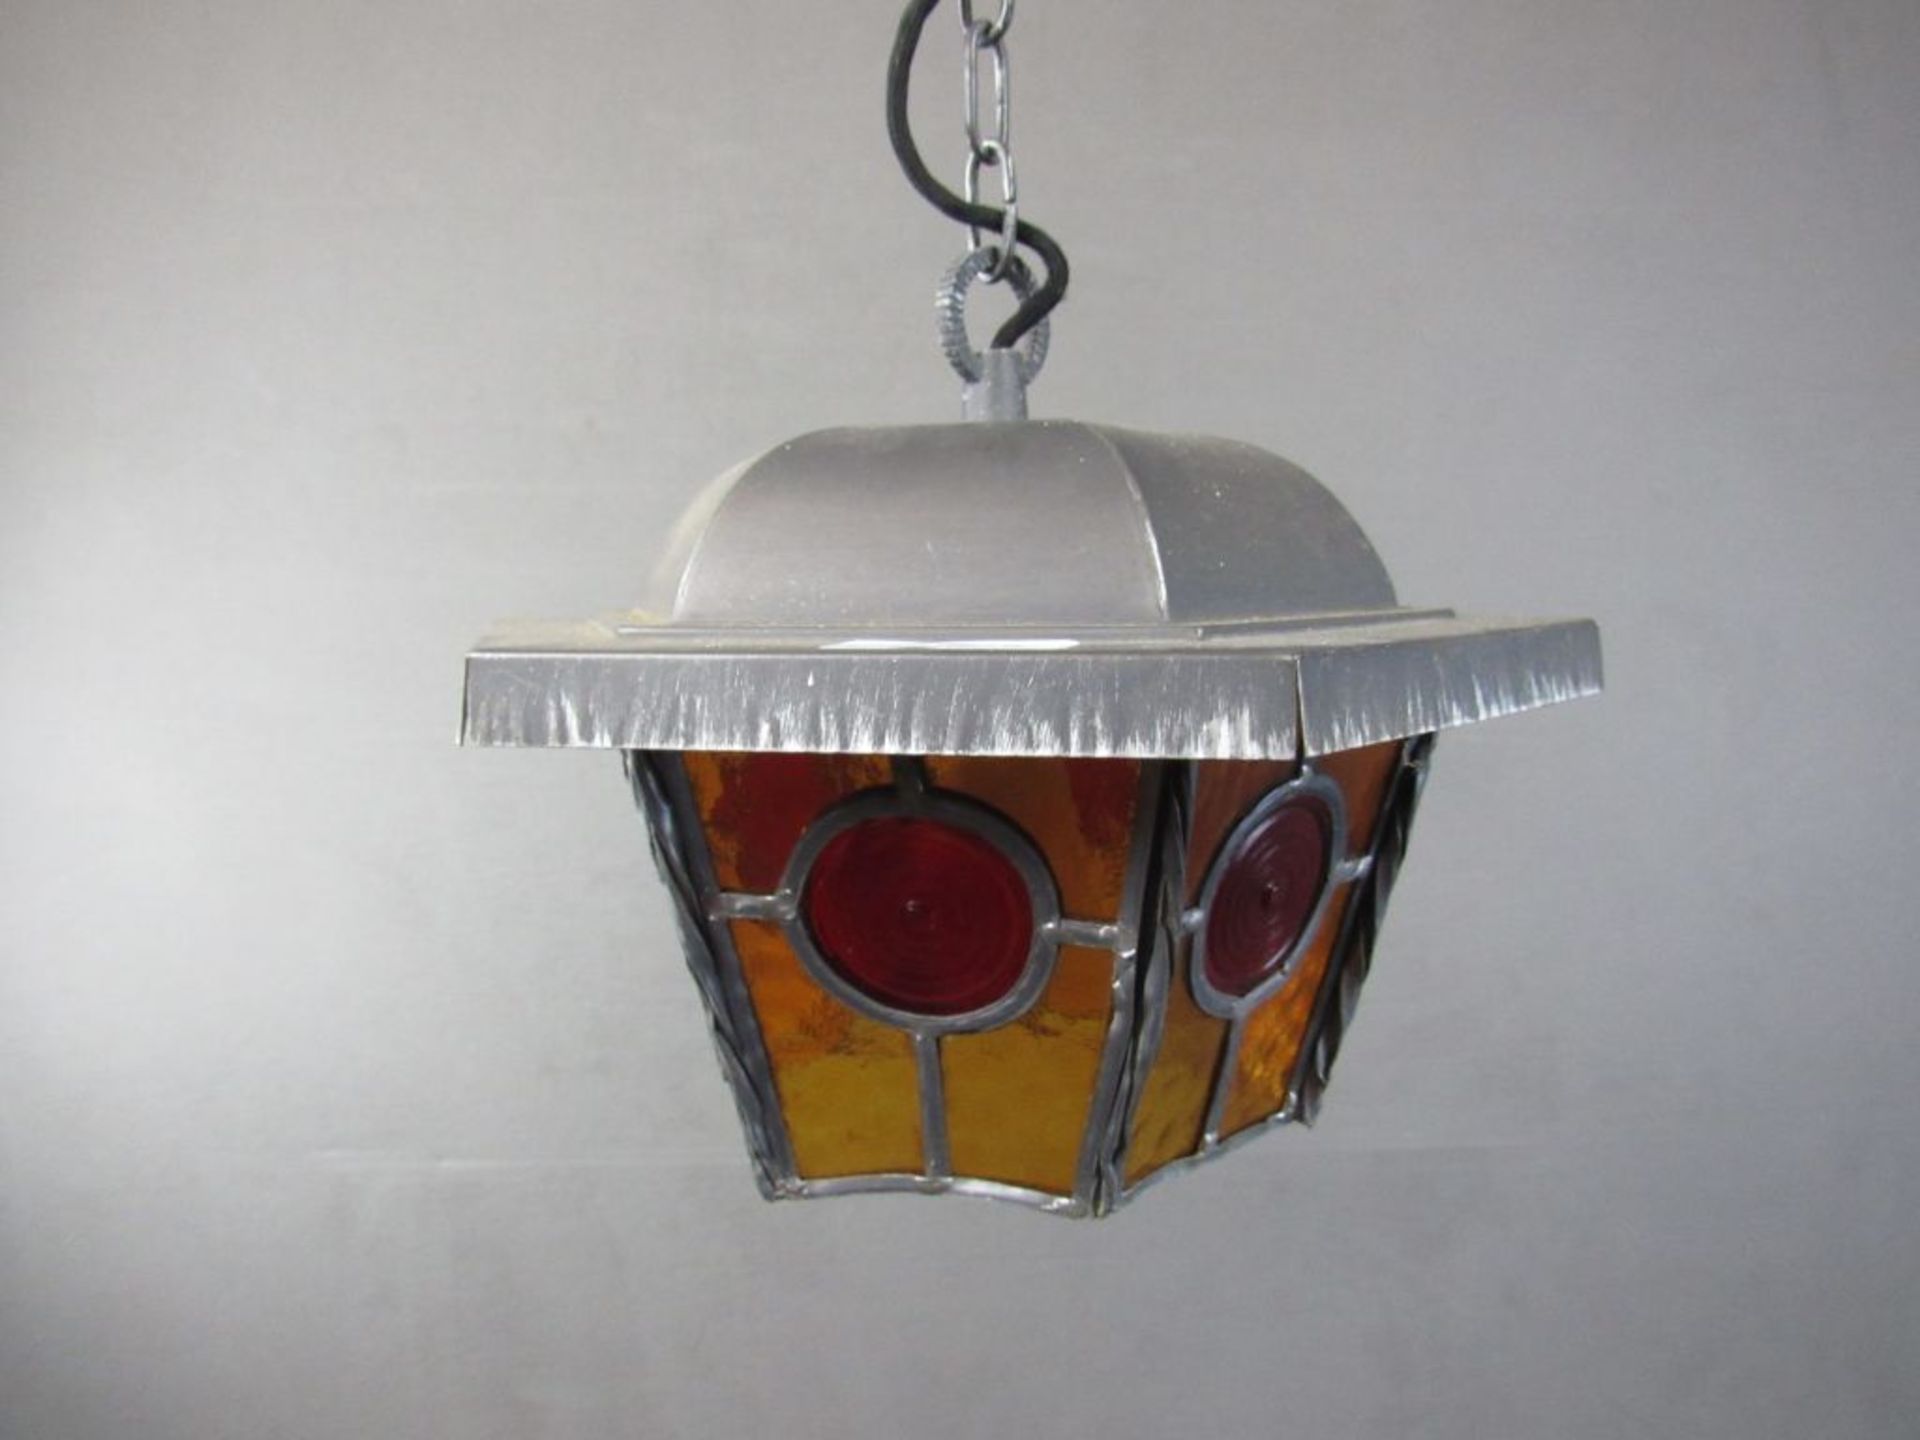 Schöne Deckenlampe in Jugendstilmanier mit Bleiverglasung ca.33cm Durchmesser